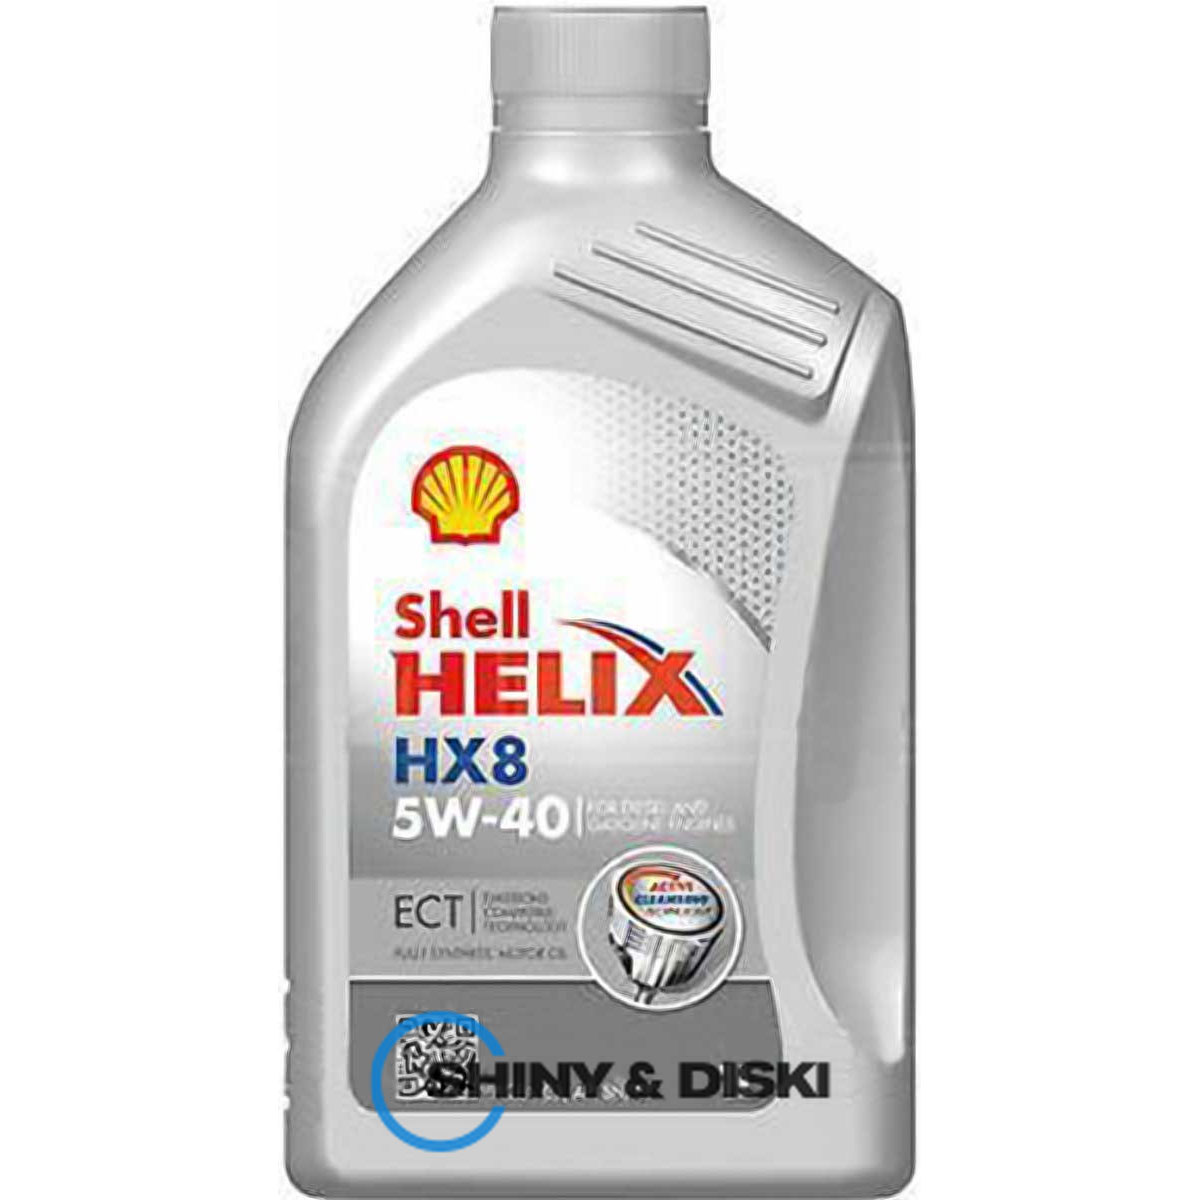 shell helix hx8 ect